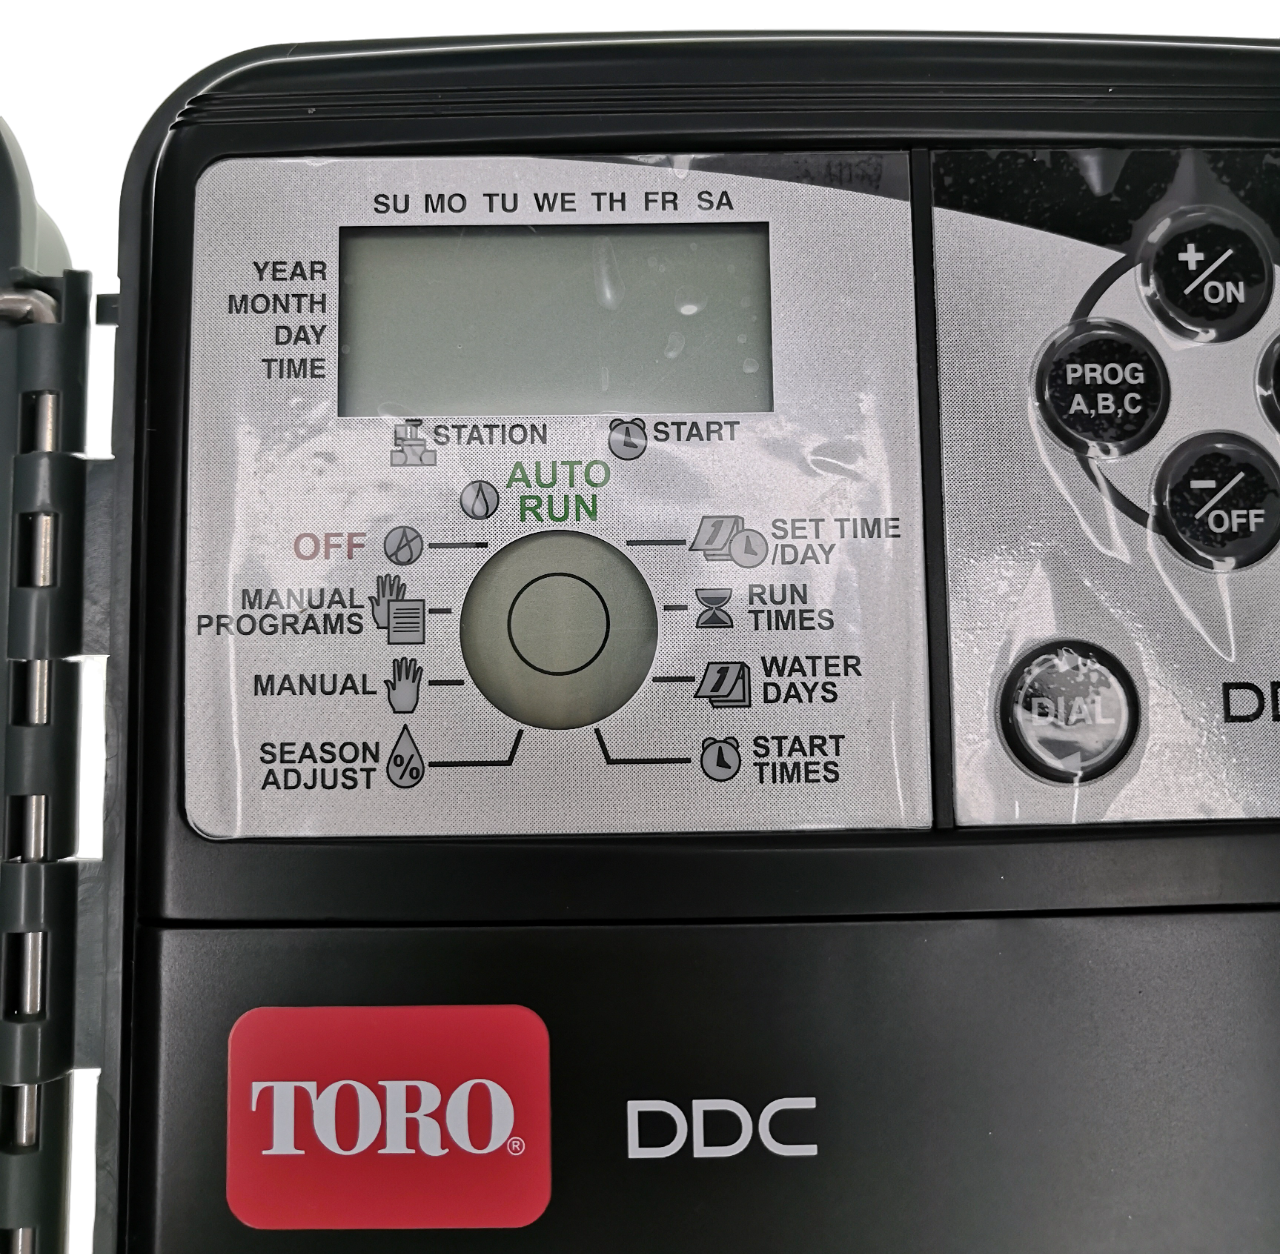 Контроллер автоматического полива TORO DDC 4 OD на 4 зоны, установка вне помещения. - фотография № 4